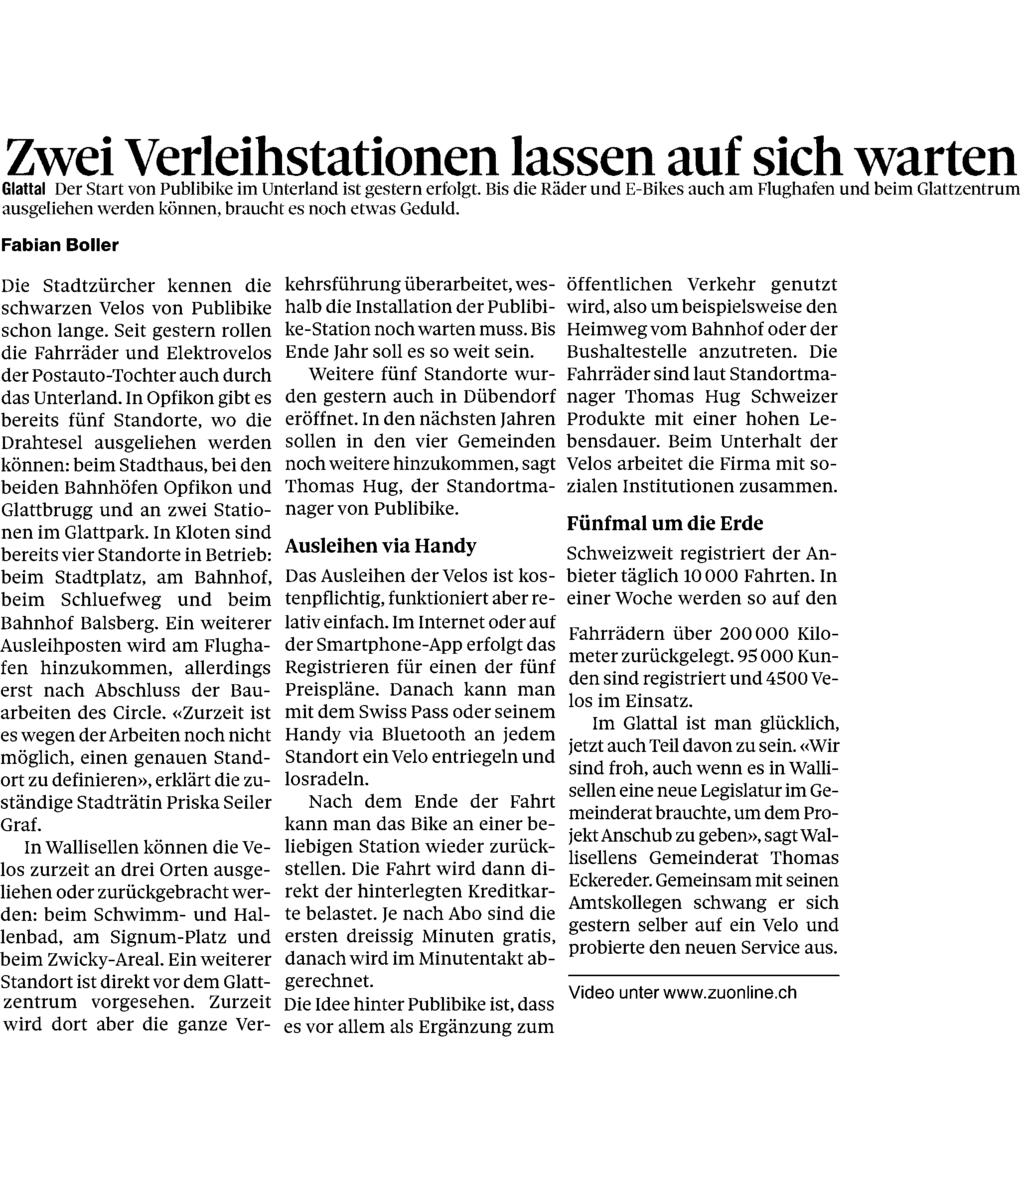 Zürcher Unterländer / Neues Bülacher Tagblatt 8180 Bülach 044/ 854 82 82 www.zuonline.ch/ Auflage: 15'793 Seite: 3 Erscheinungsweise: 6x wöchentlich Fläche: 79'169 mm² Themen-Nr.: 382.